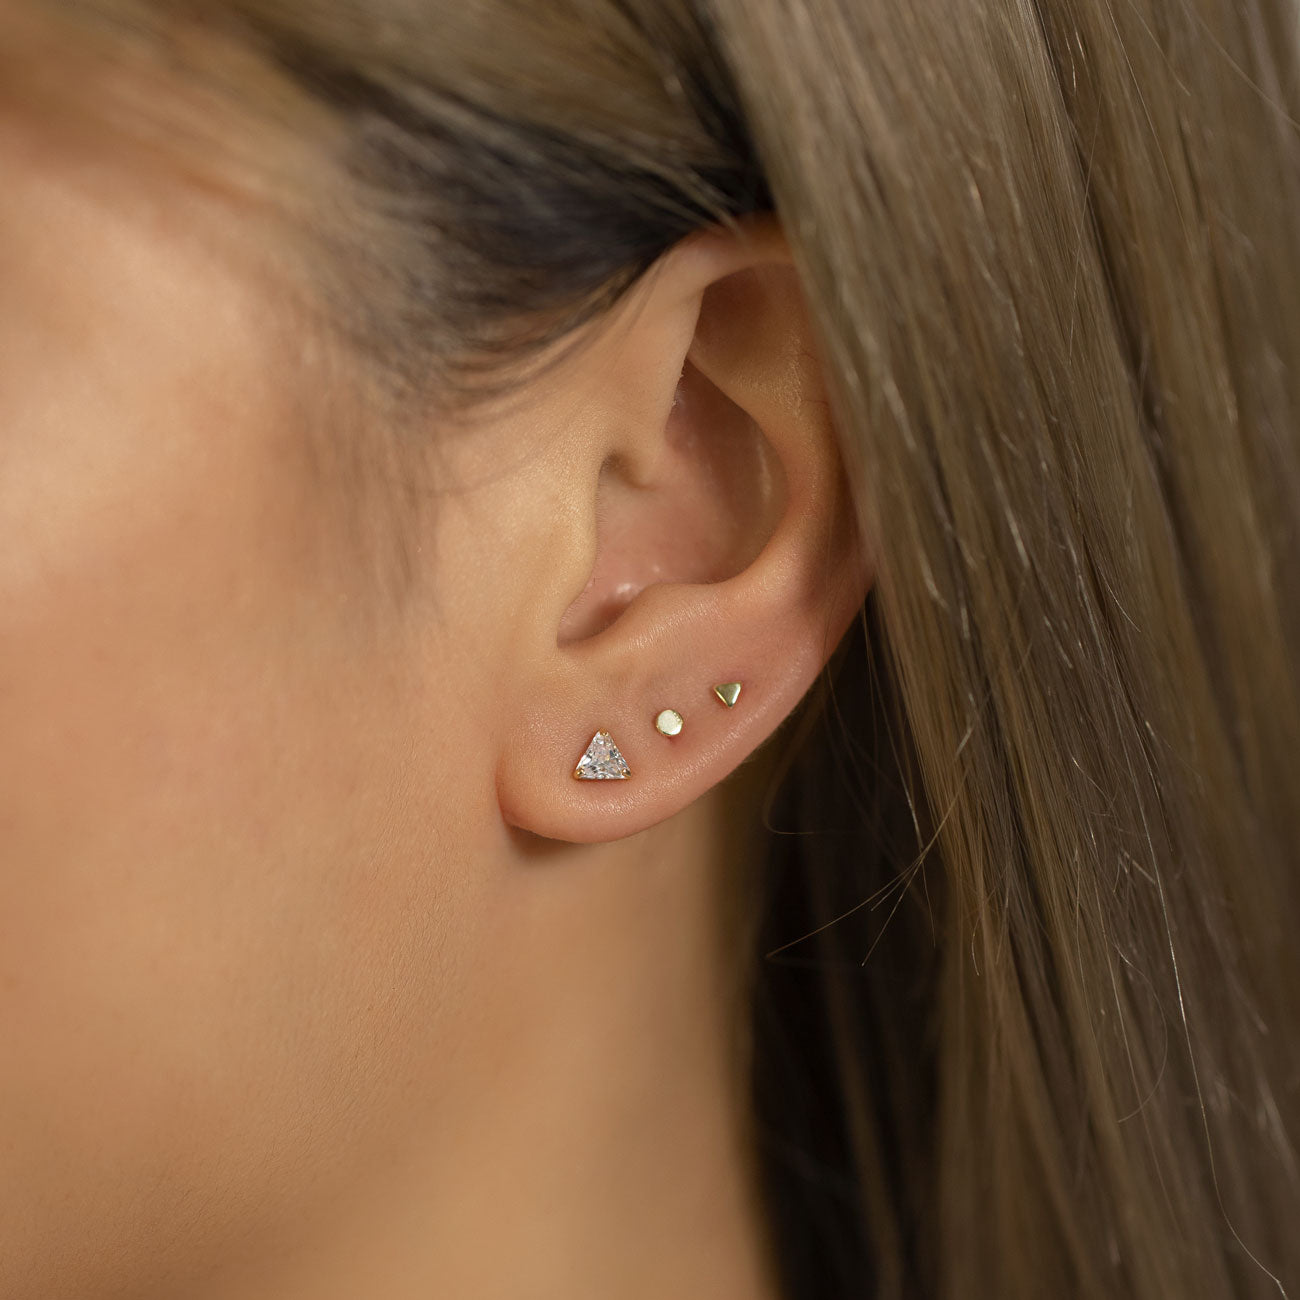 Double Piercing Chain Dangle Earrings | Second hole earrings, Earrings,  Ettika